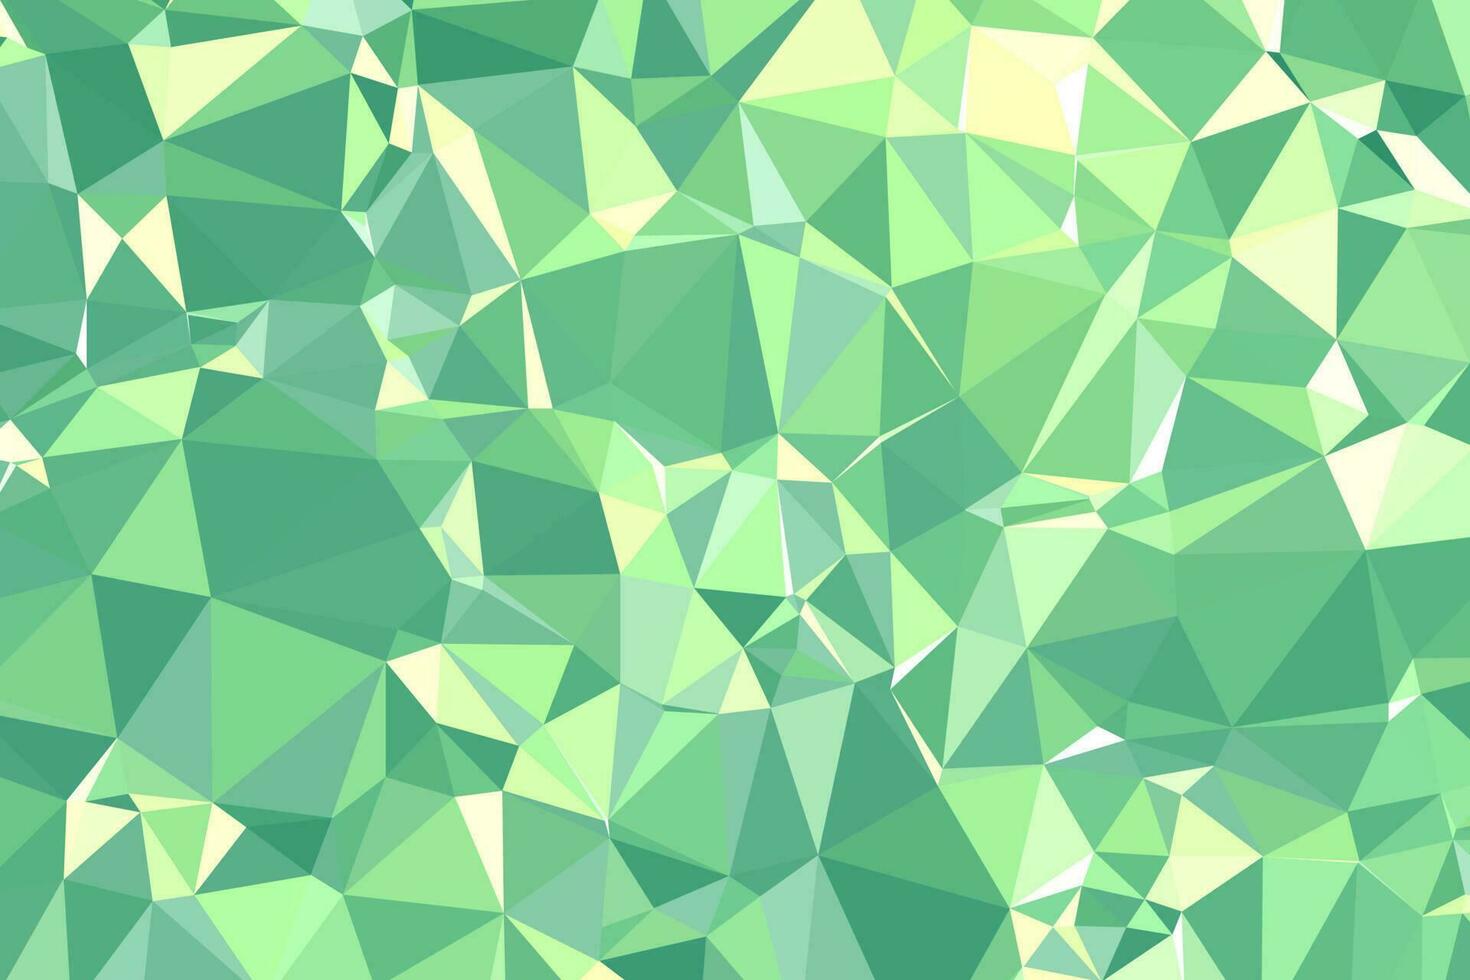 abstrakter strukturierter grüner polygonaler Hintergrund. Low-Poly-Geometrie bestehend aus Dreiecken unterschiedlicher Größe und Farbe. verwendung in design cover, präsentation, visitenkarte oder website. vektor